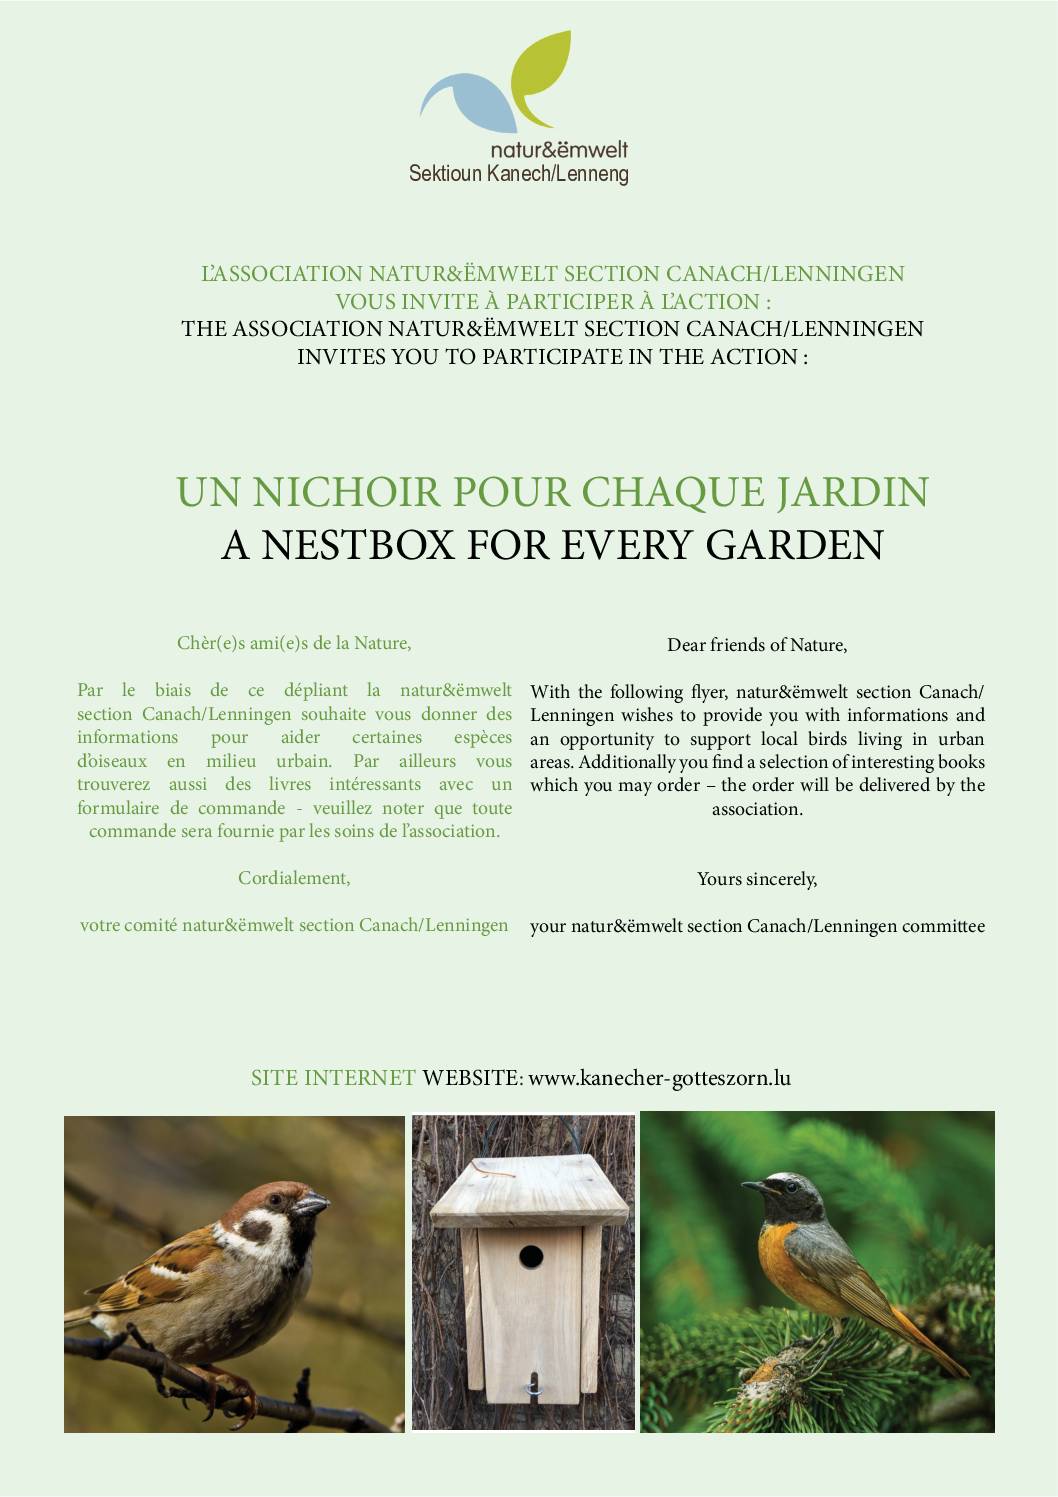 Natur & Ëmwelt Sektion Kanech/Lenneng - E Vullenhaischen fir all Gaart / Un nichoir pour chaque jardin